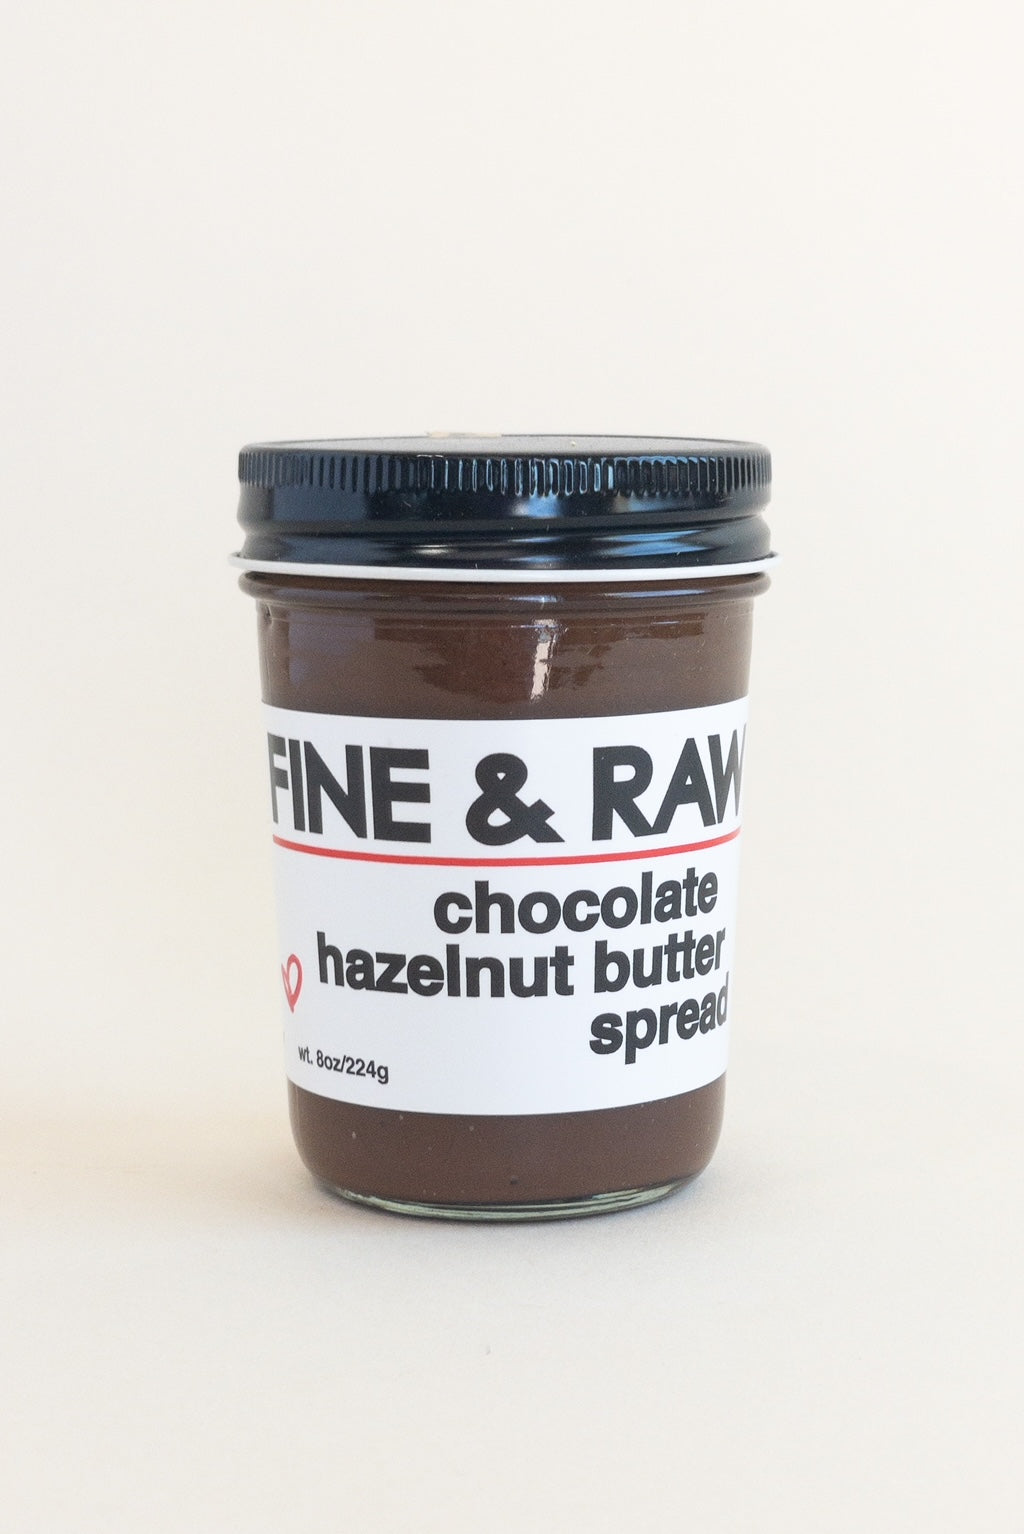 FINE & RAW - chocolate hazelnut butter spread